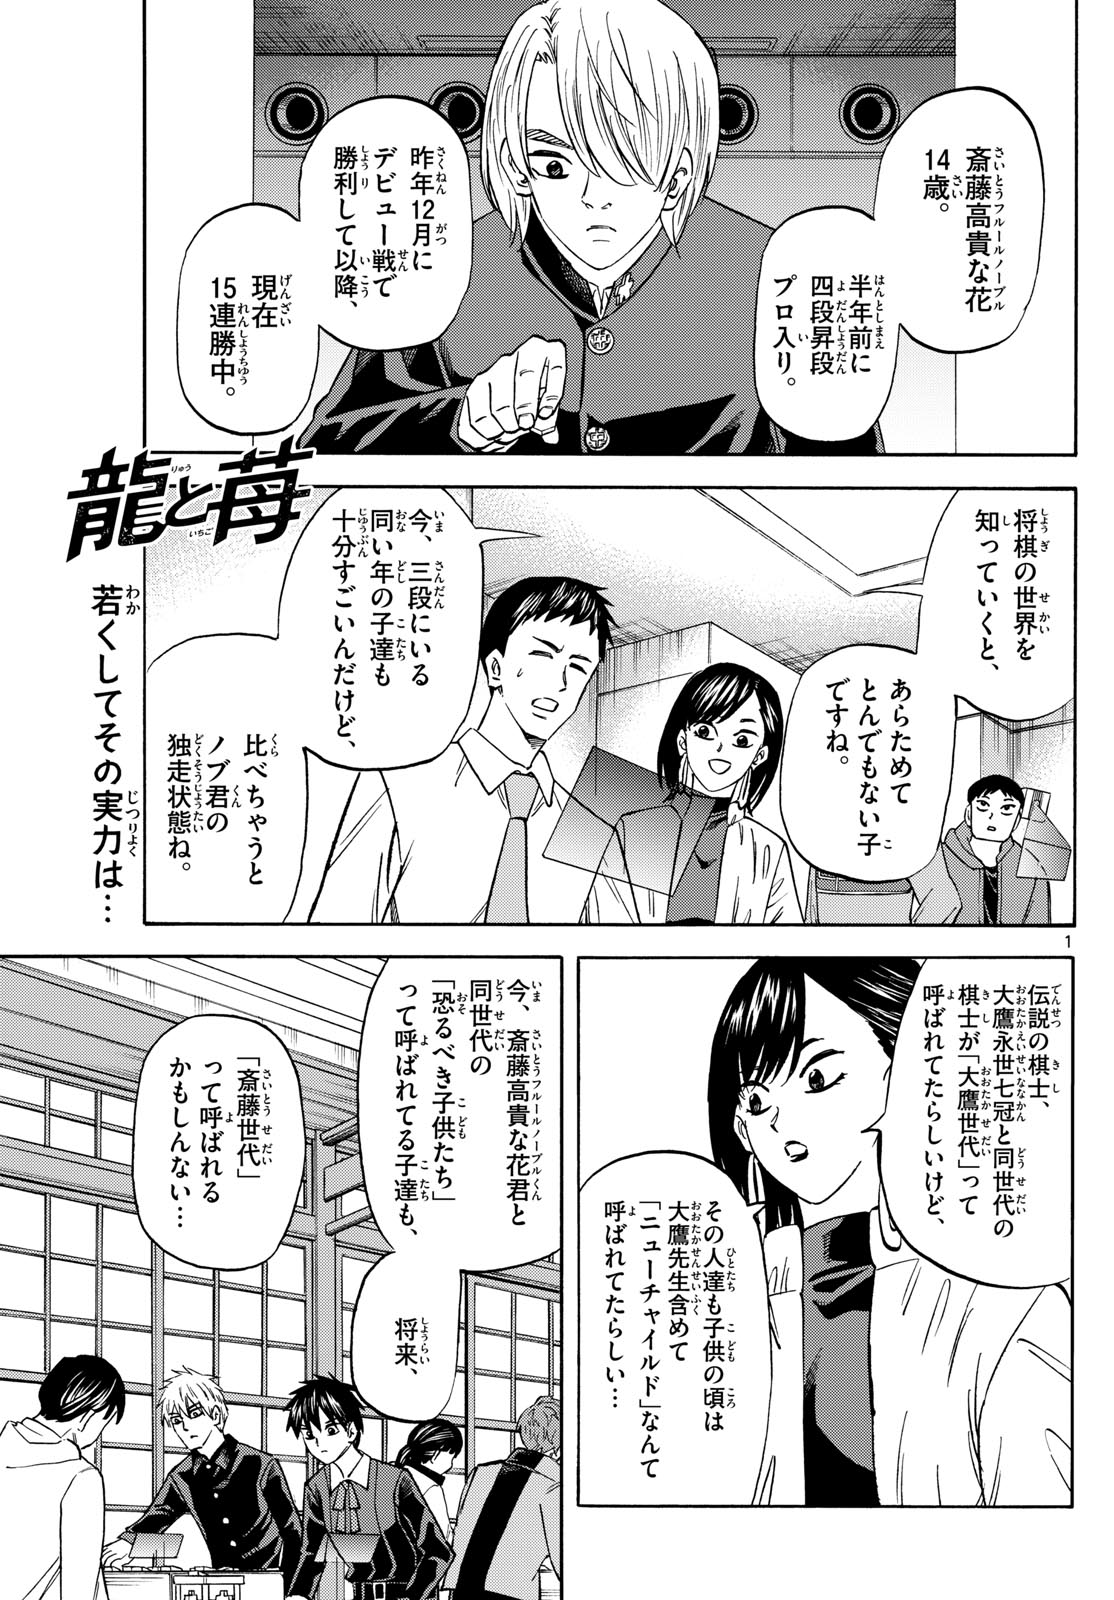 Tatsu to Ichigo - Chapter 187 - Page 1